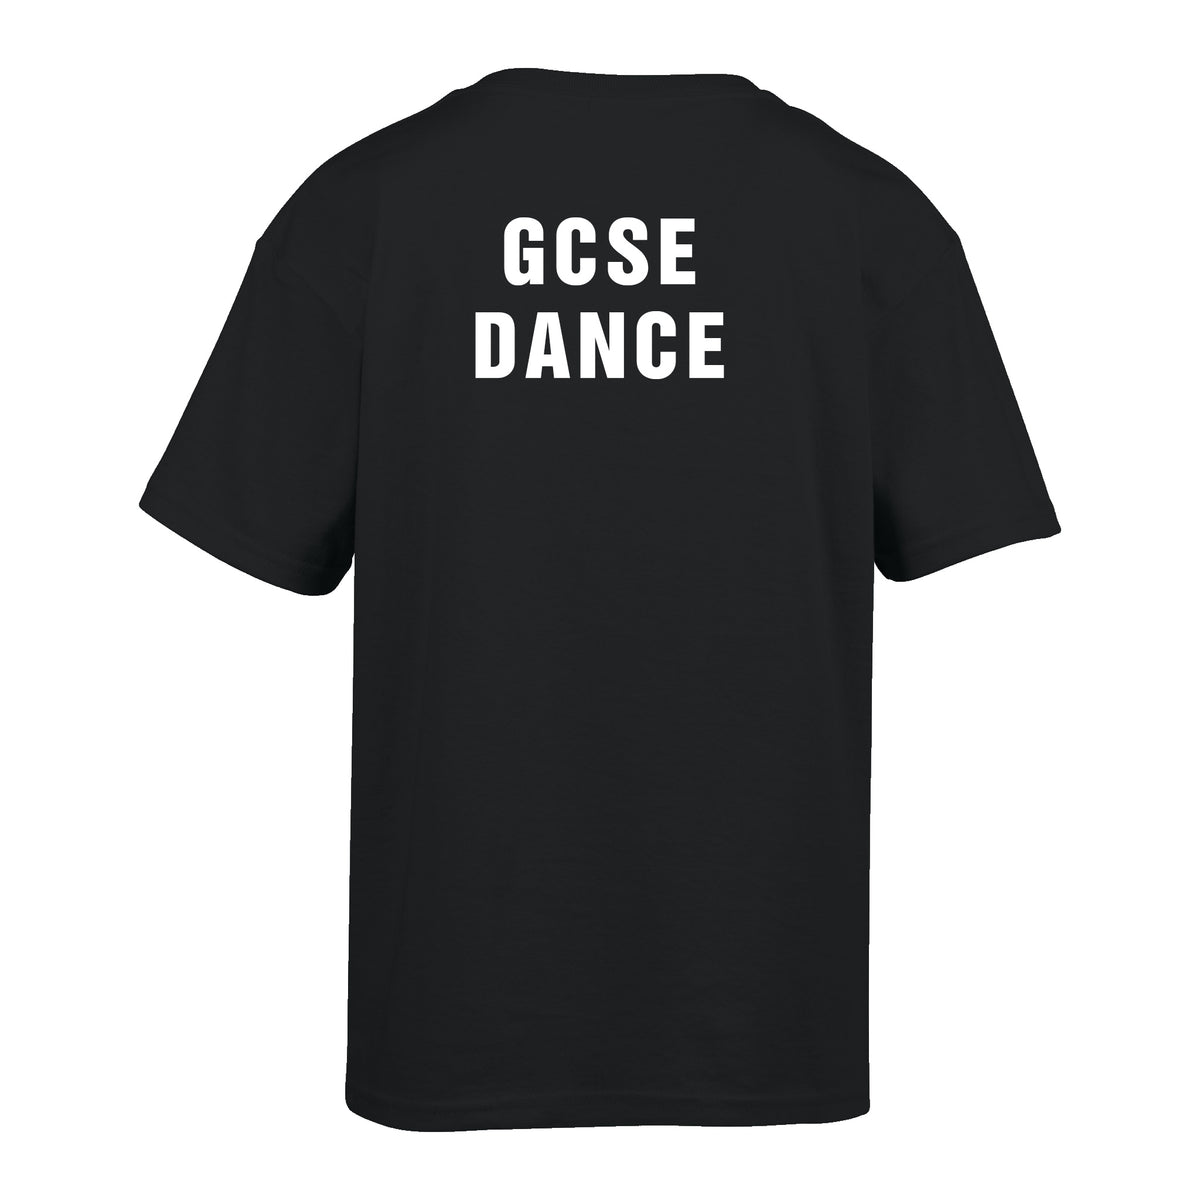 Sir William Borlase Grammar School GCSE Dance Tshirt